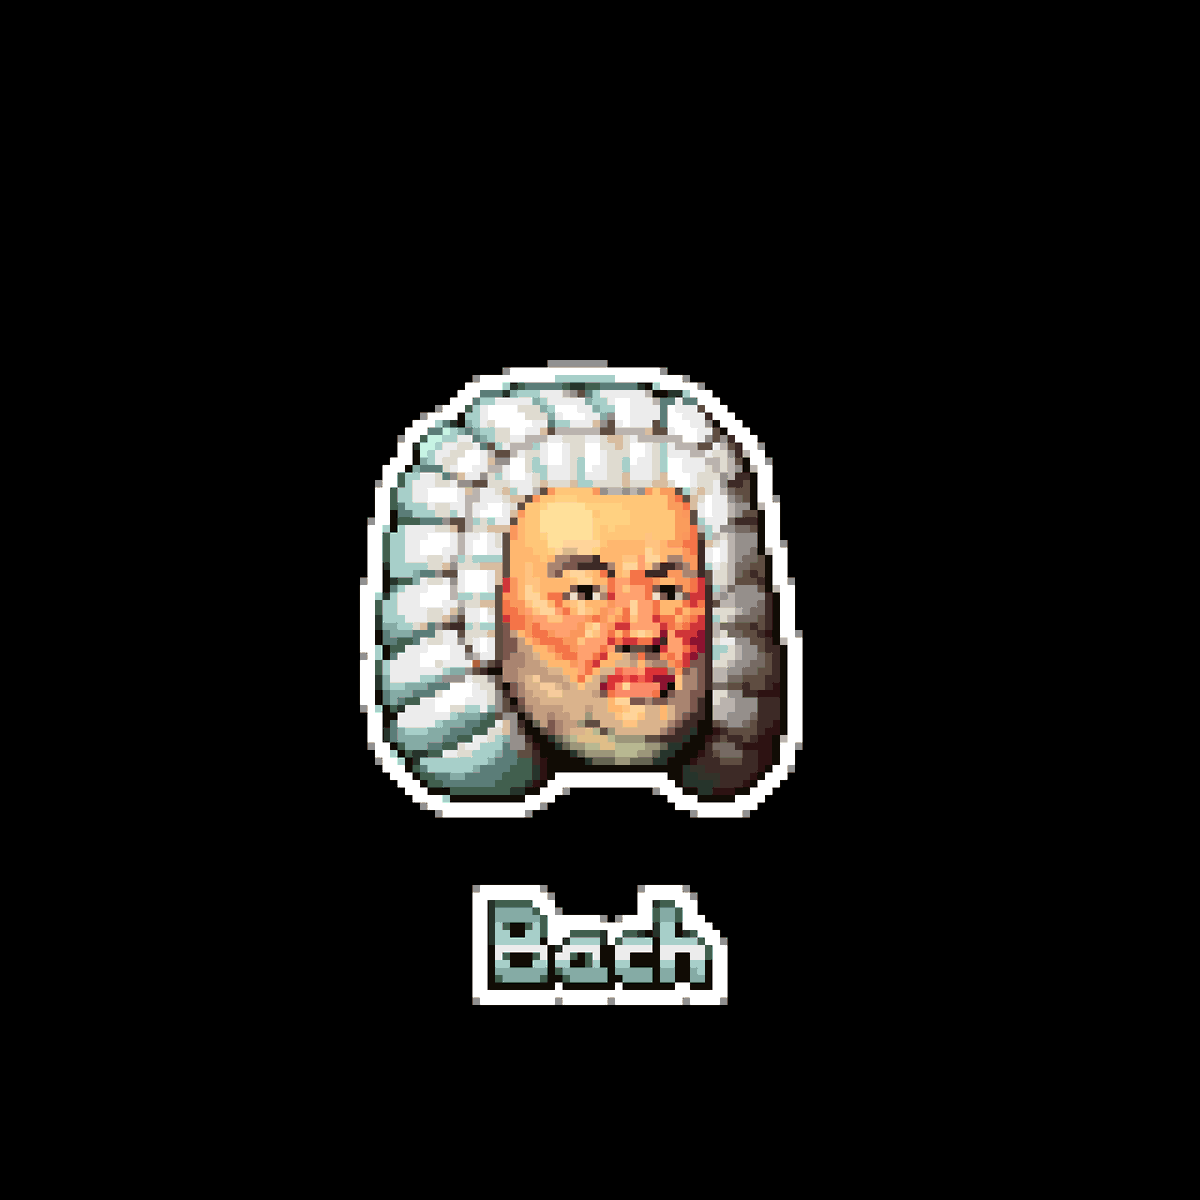 J.S.Bach 🎼
#pixelart